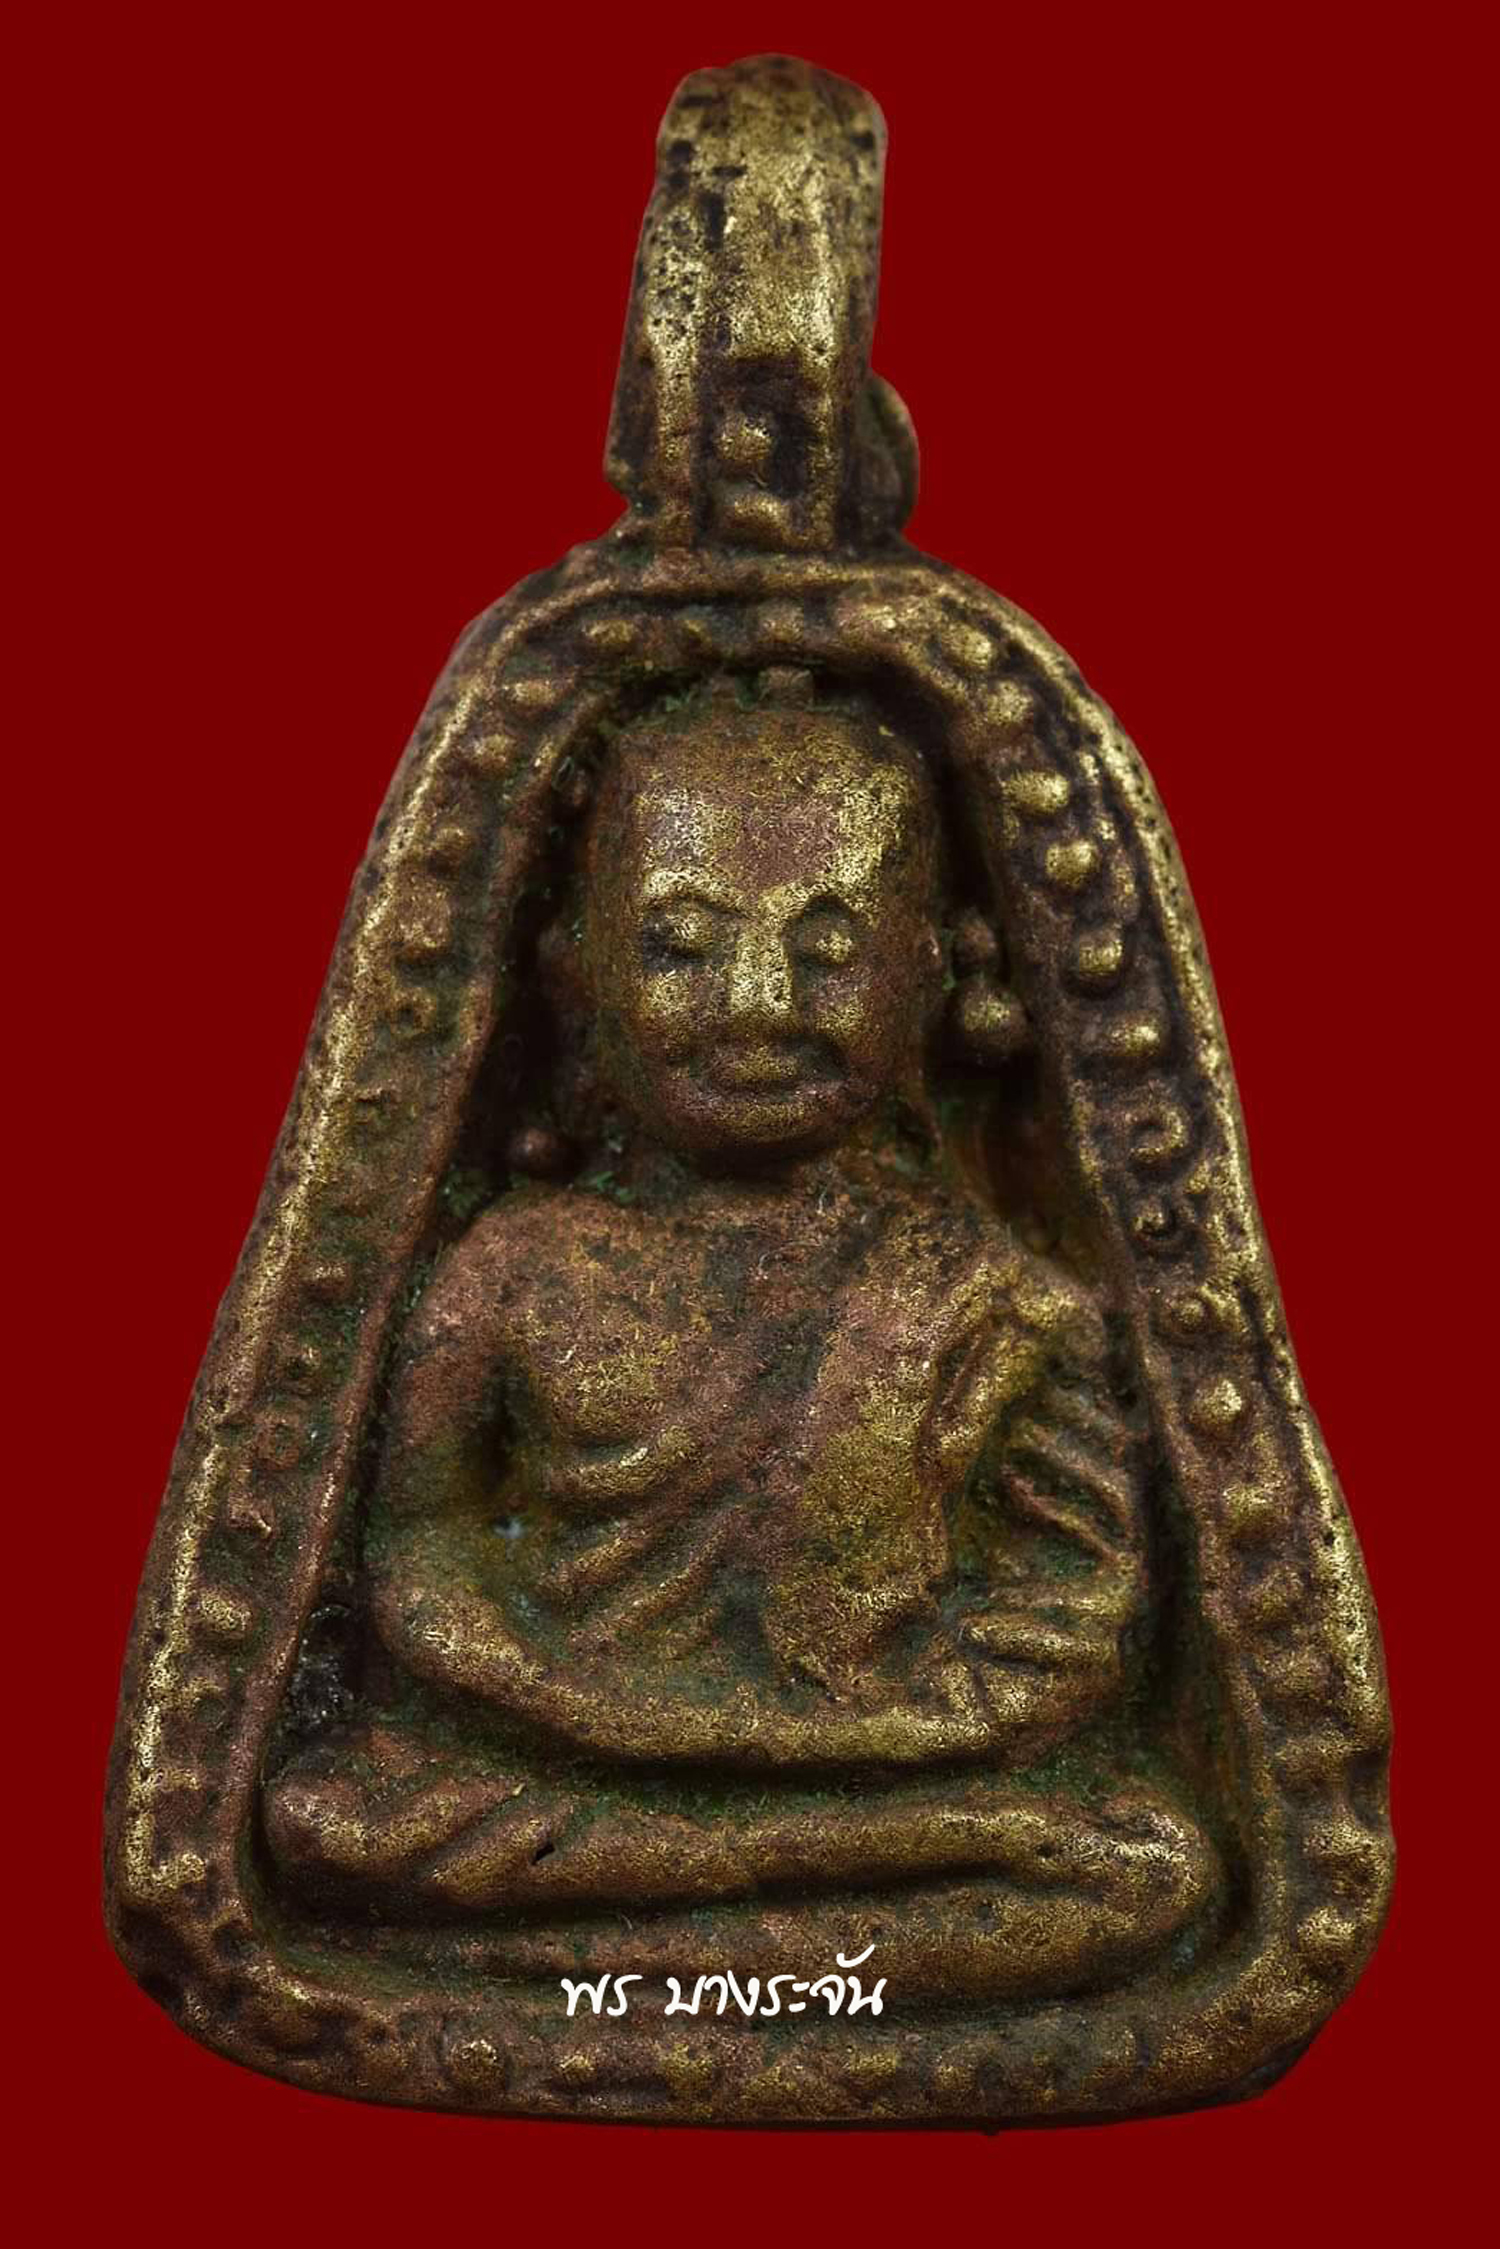 รูปหล่อหลวงพ่อเงินบางคลาน พิมพ์จอบใหญ่ phra lp ngern statue wat bangklan antique talisman old thai buddha amulet 銮菩银 财佛, 鑾菩銀 大師